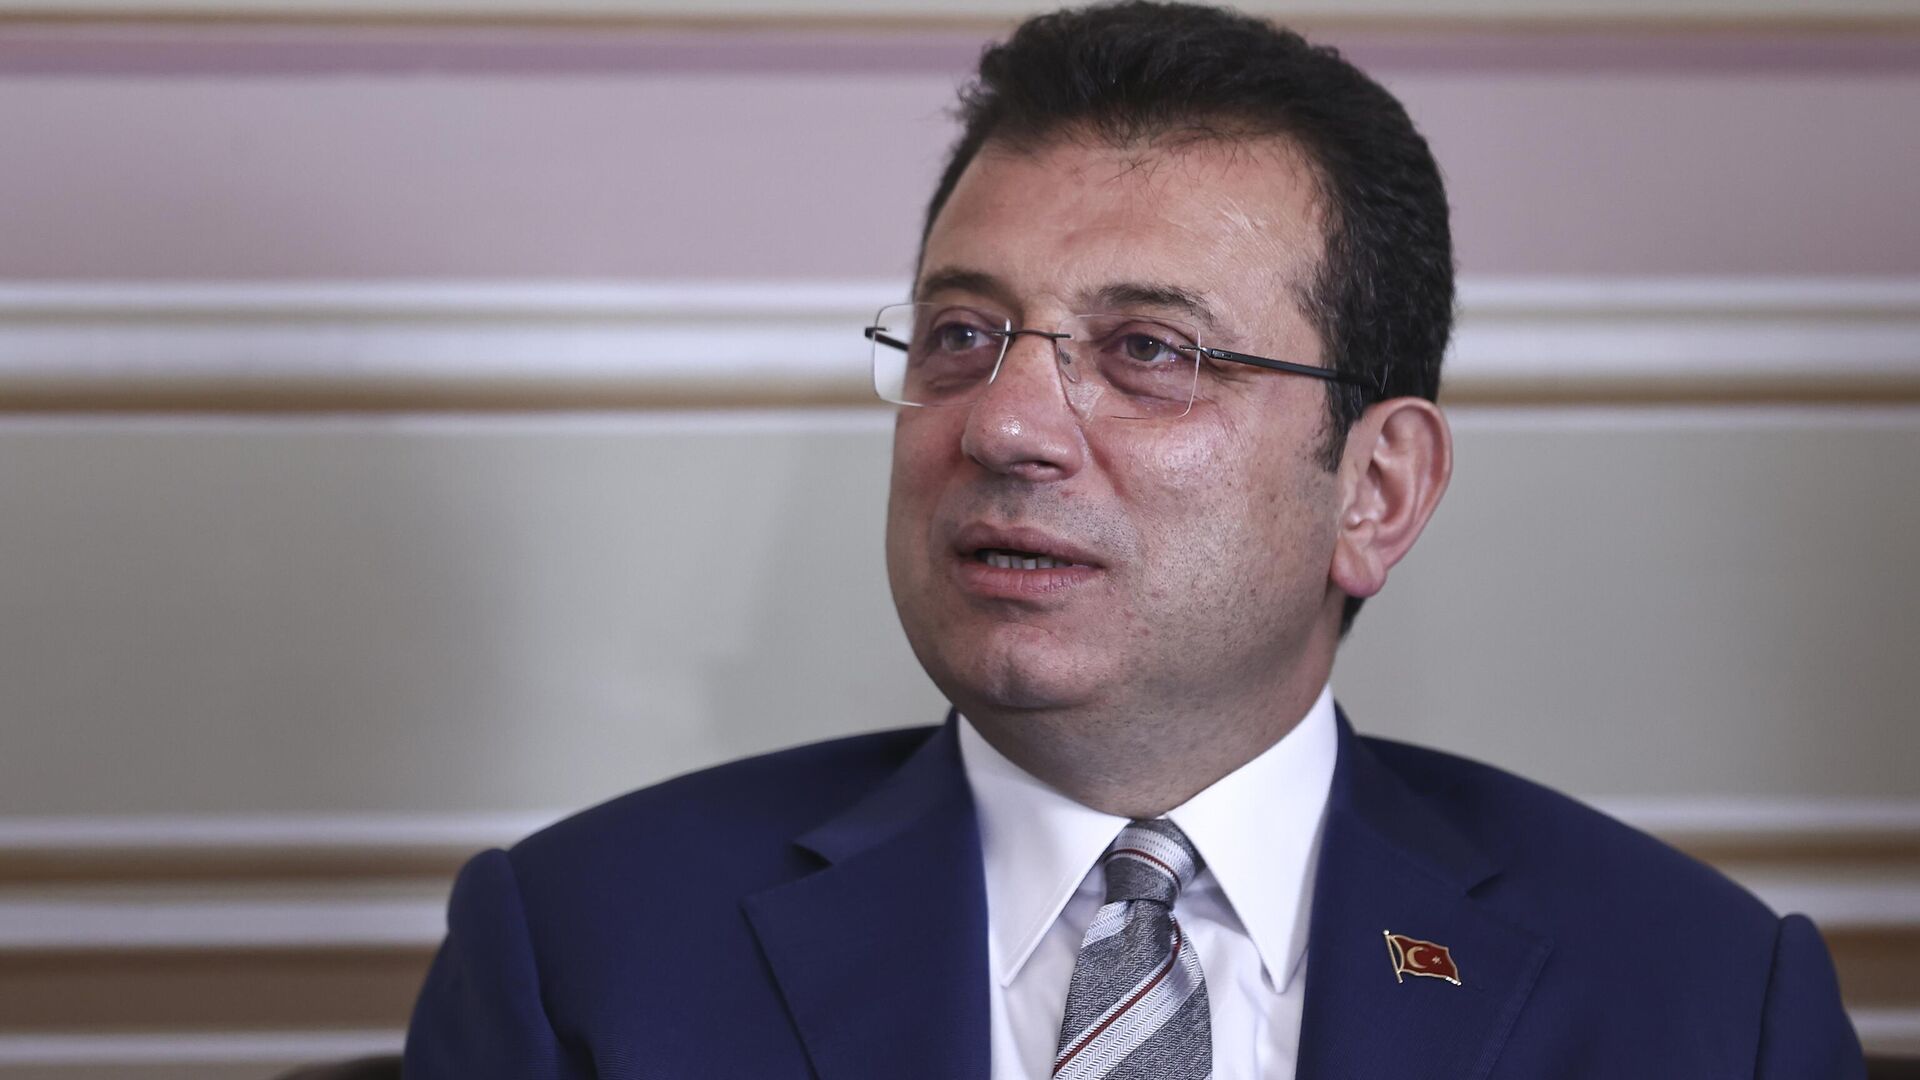 İBB Başkanı Ekrem İmamoğlu: Göğsümü okşayarak benimle Kürtçe konuşan annenin arasına hangi parti girebilir?